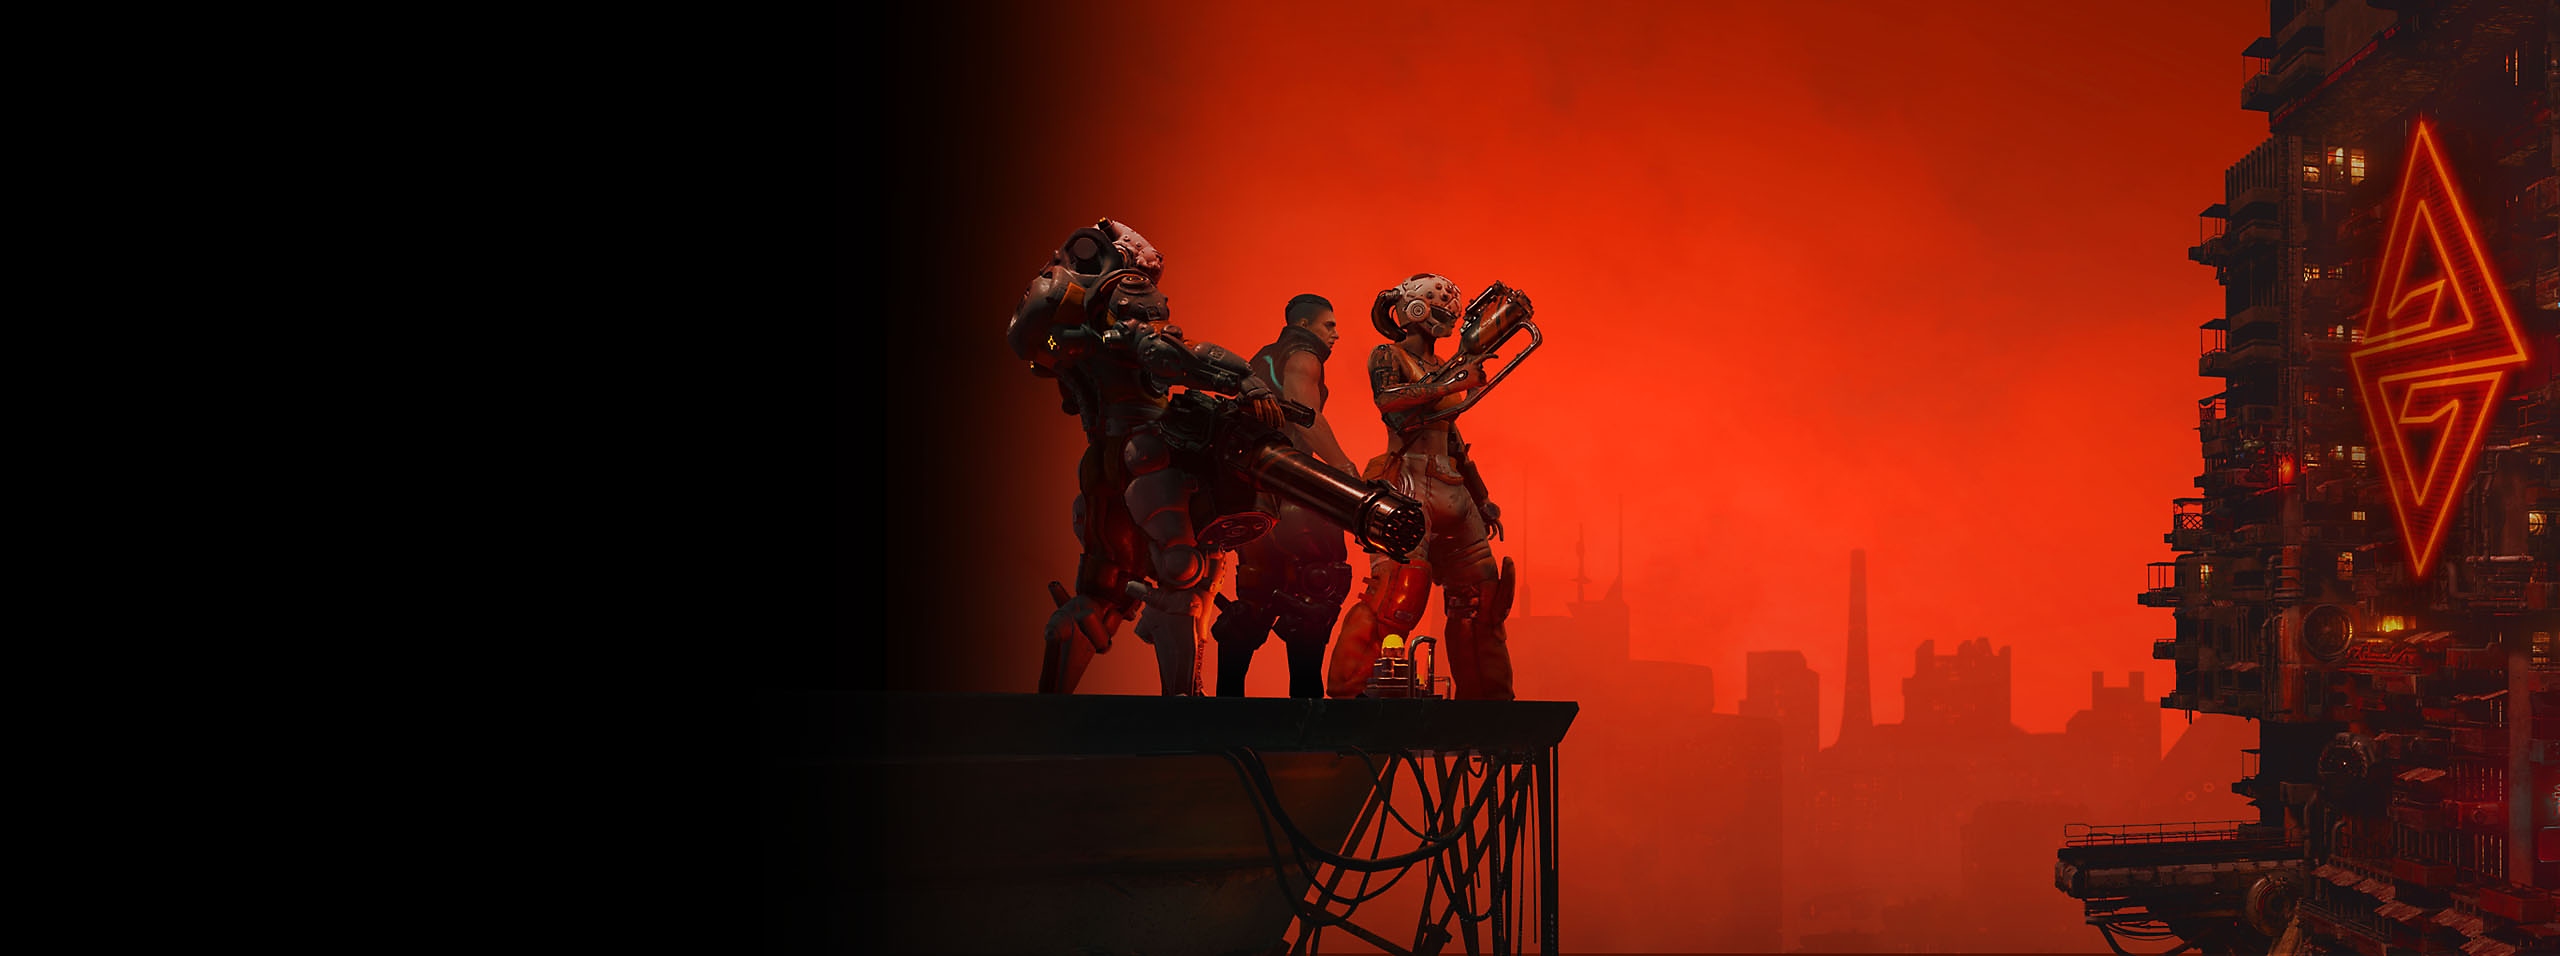 Heldengrafik von The Ascent, die drei Charaktere und eine Stadtsilhouette unter einem roten Himmel zeigt 